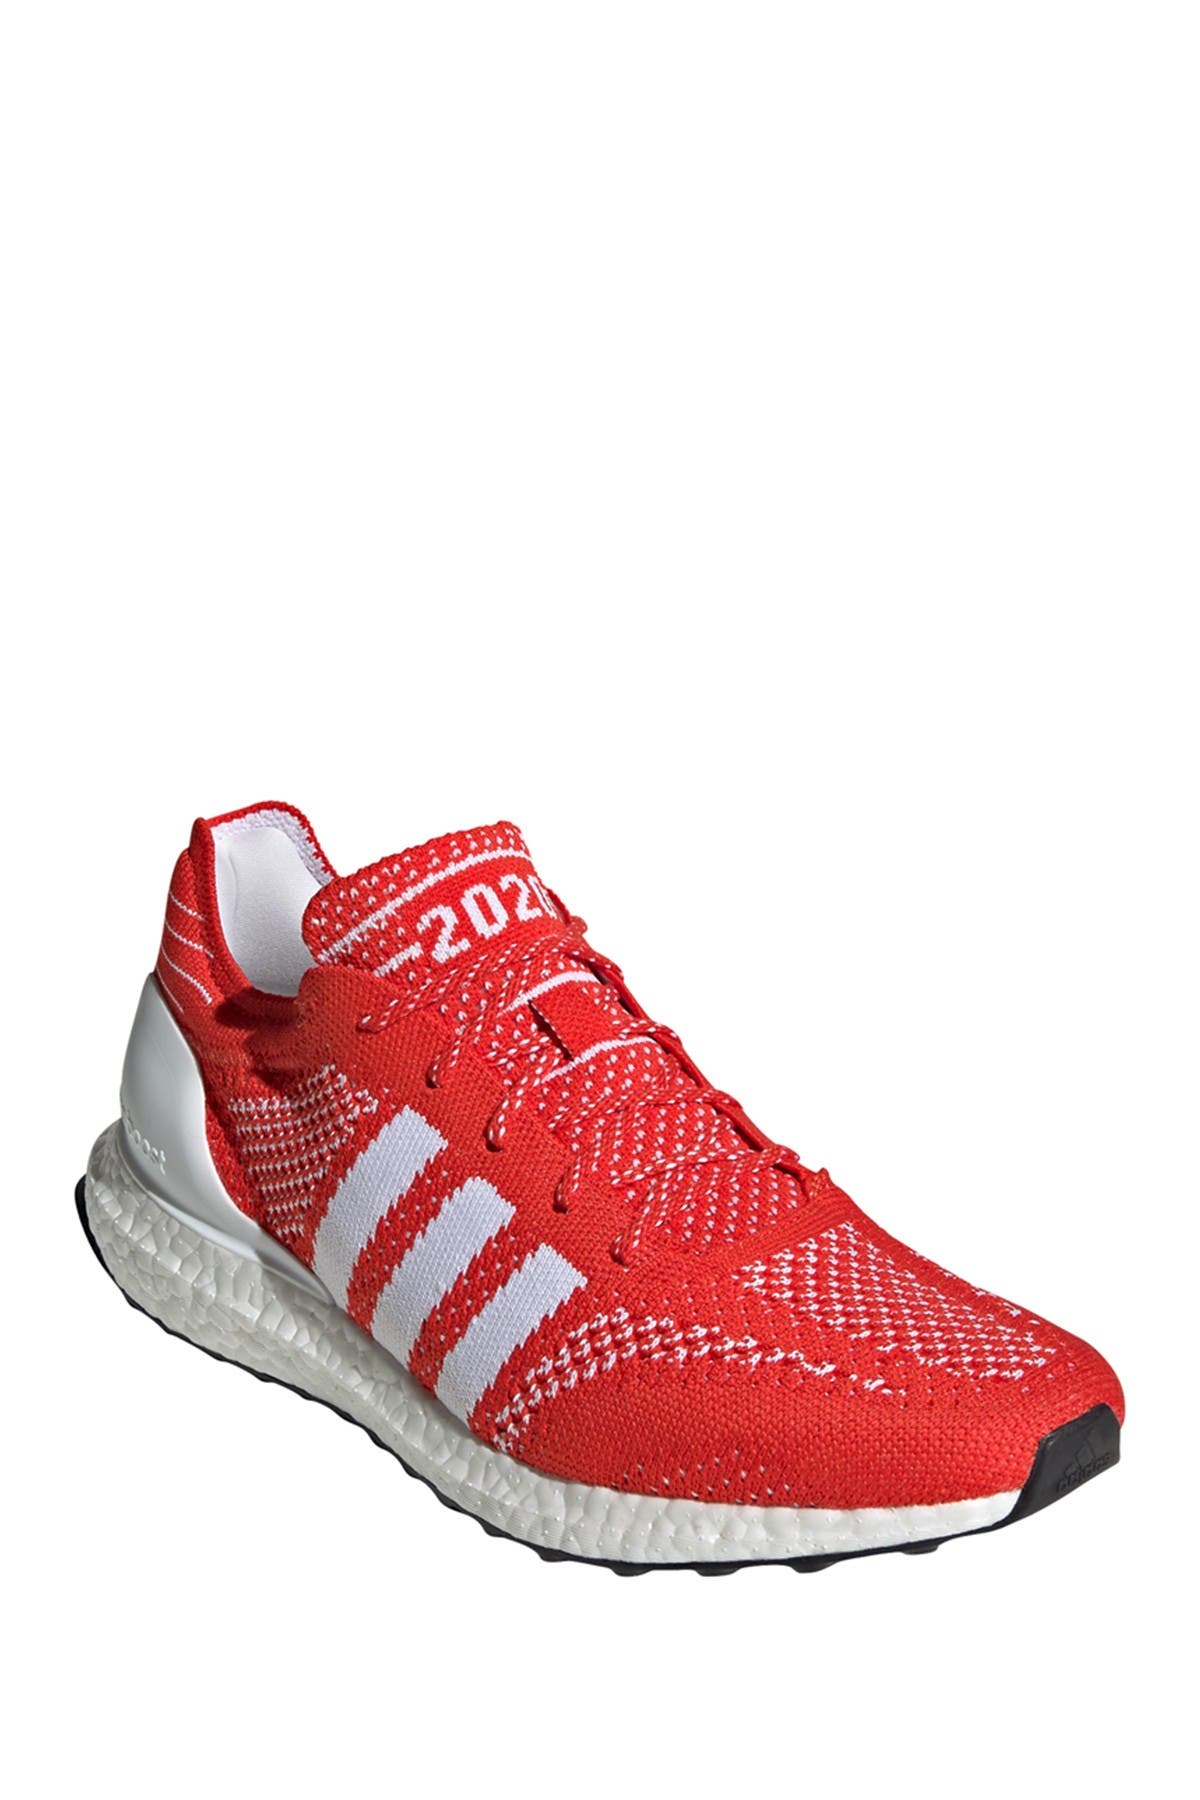 men's adidas ultraboost dna running shoes